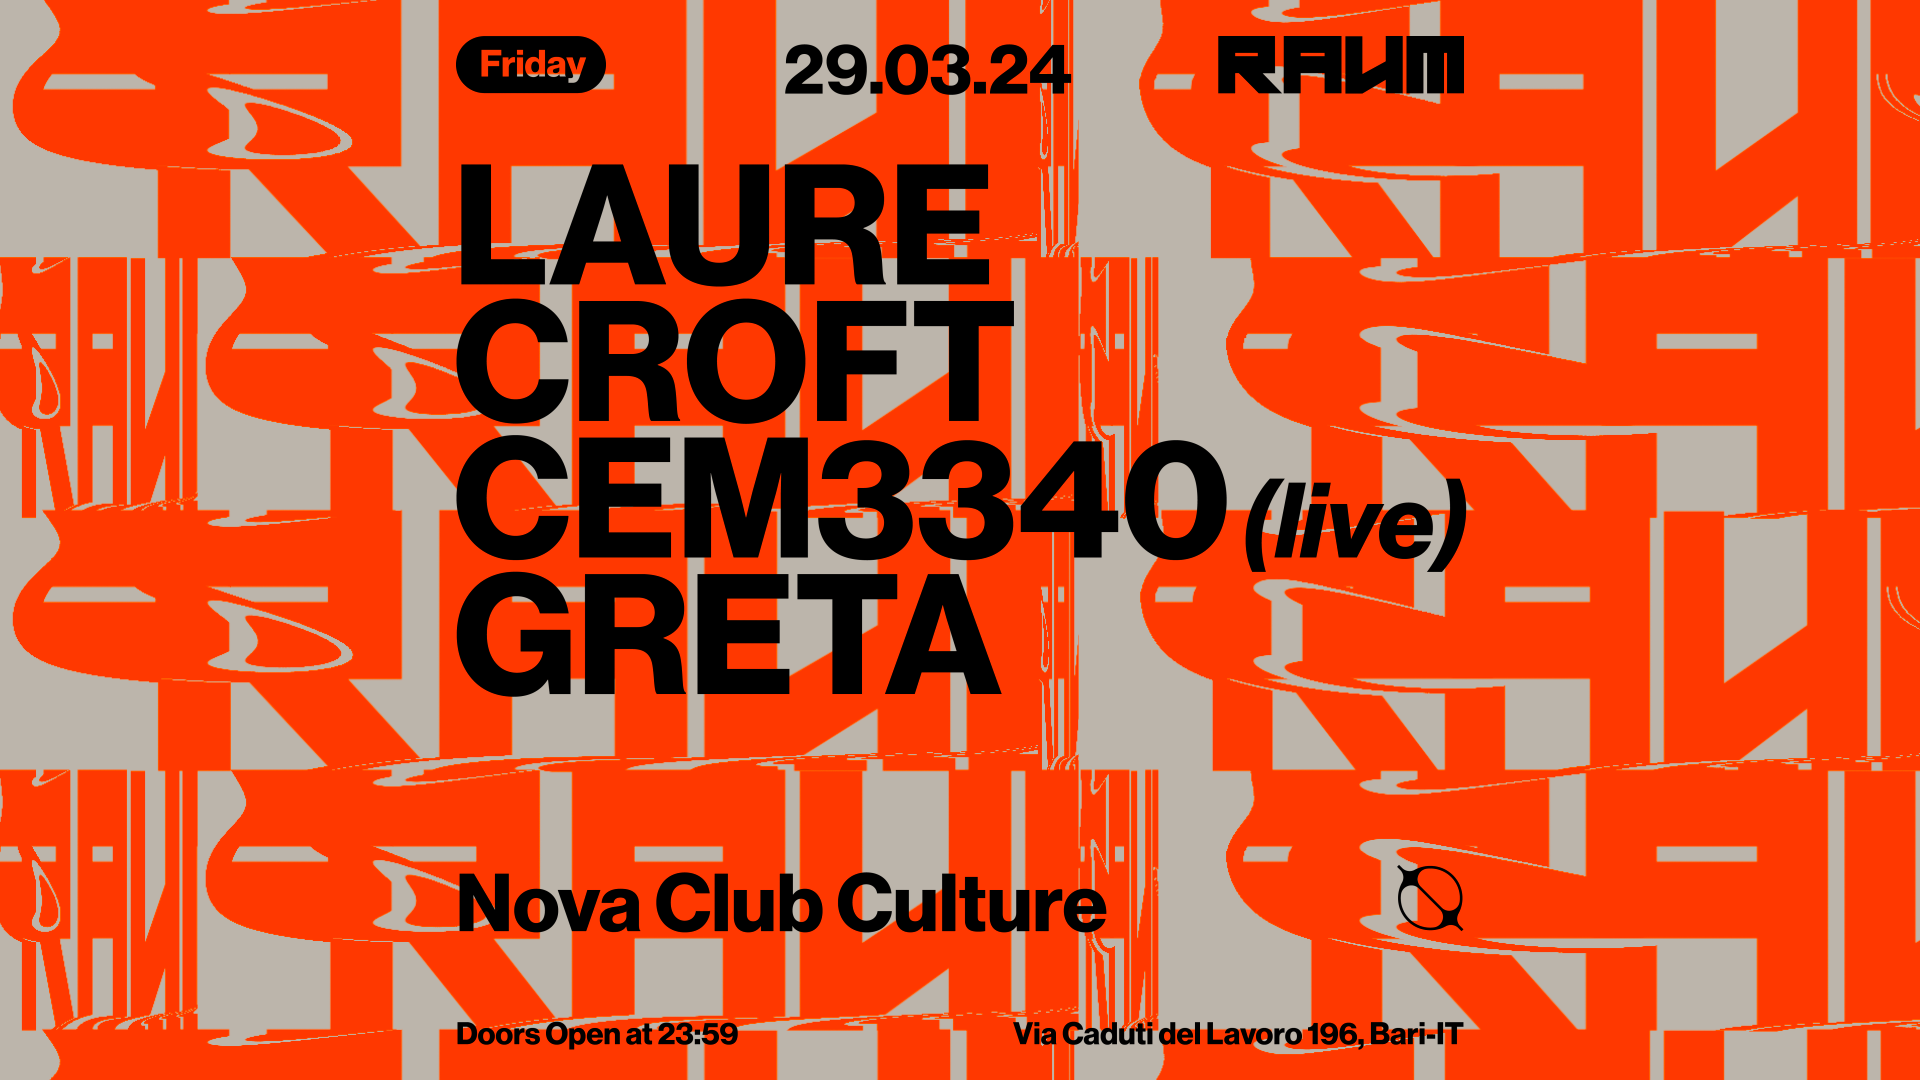 Der Raum with Laure Croft - CEM3340 - Greta - フライヤー表